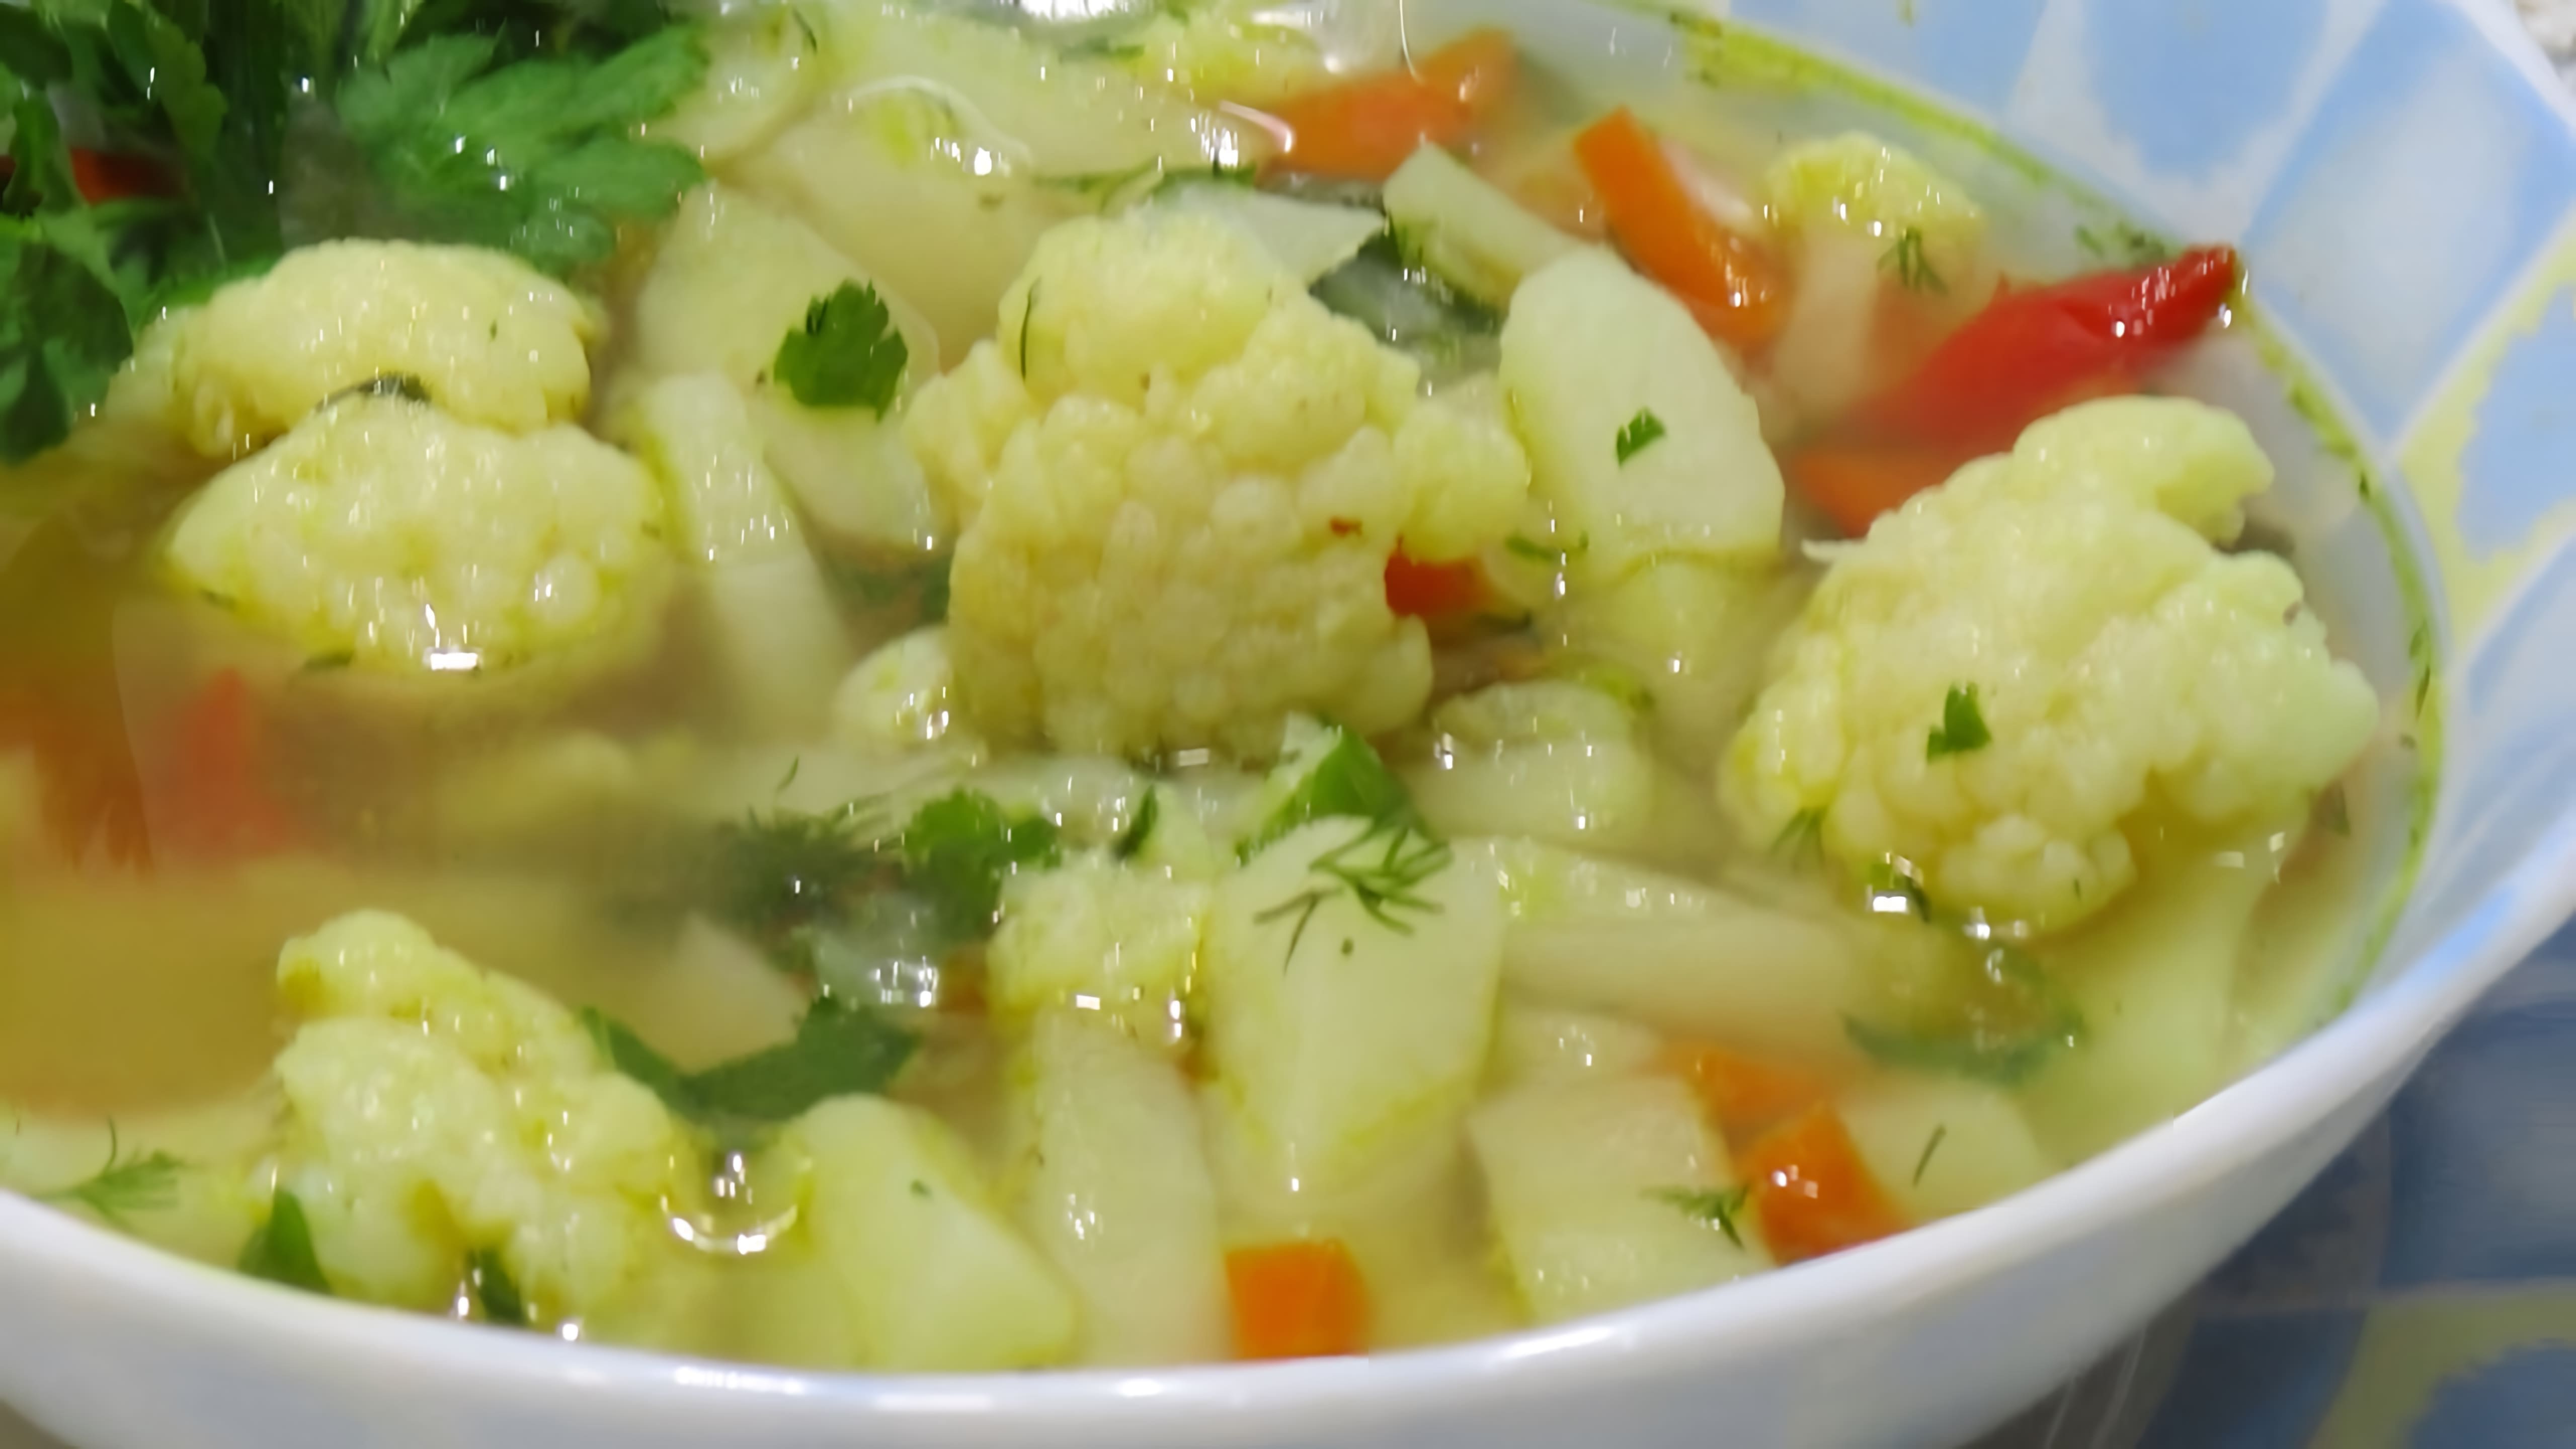 В этом видео демонстрируется процесс приготовления легкого постного овощного супа с цветной капустой